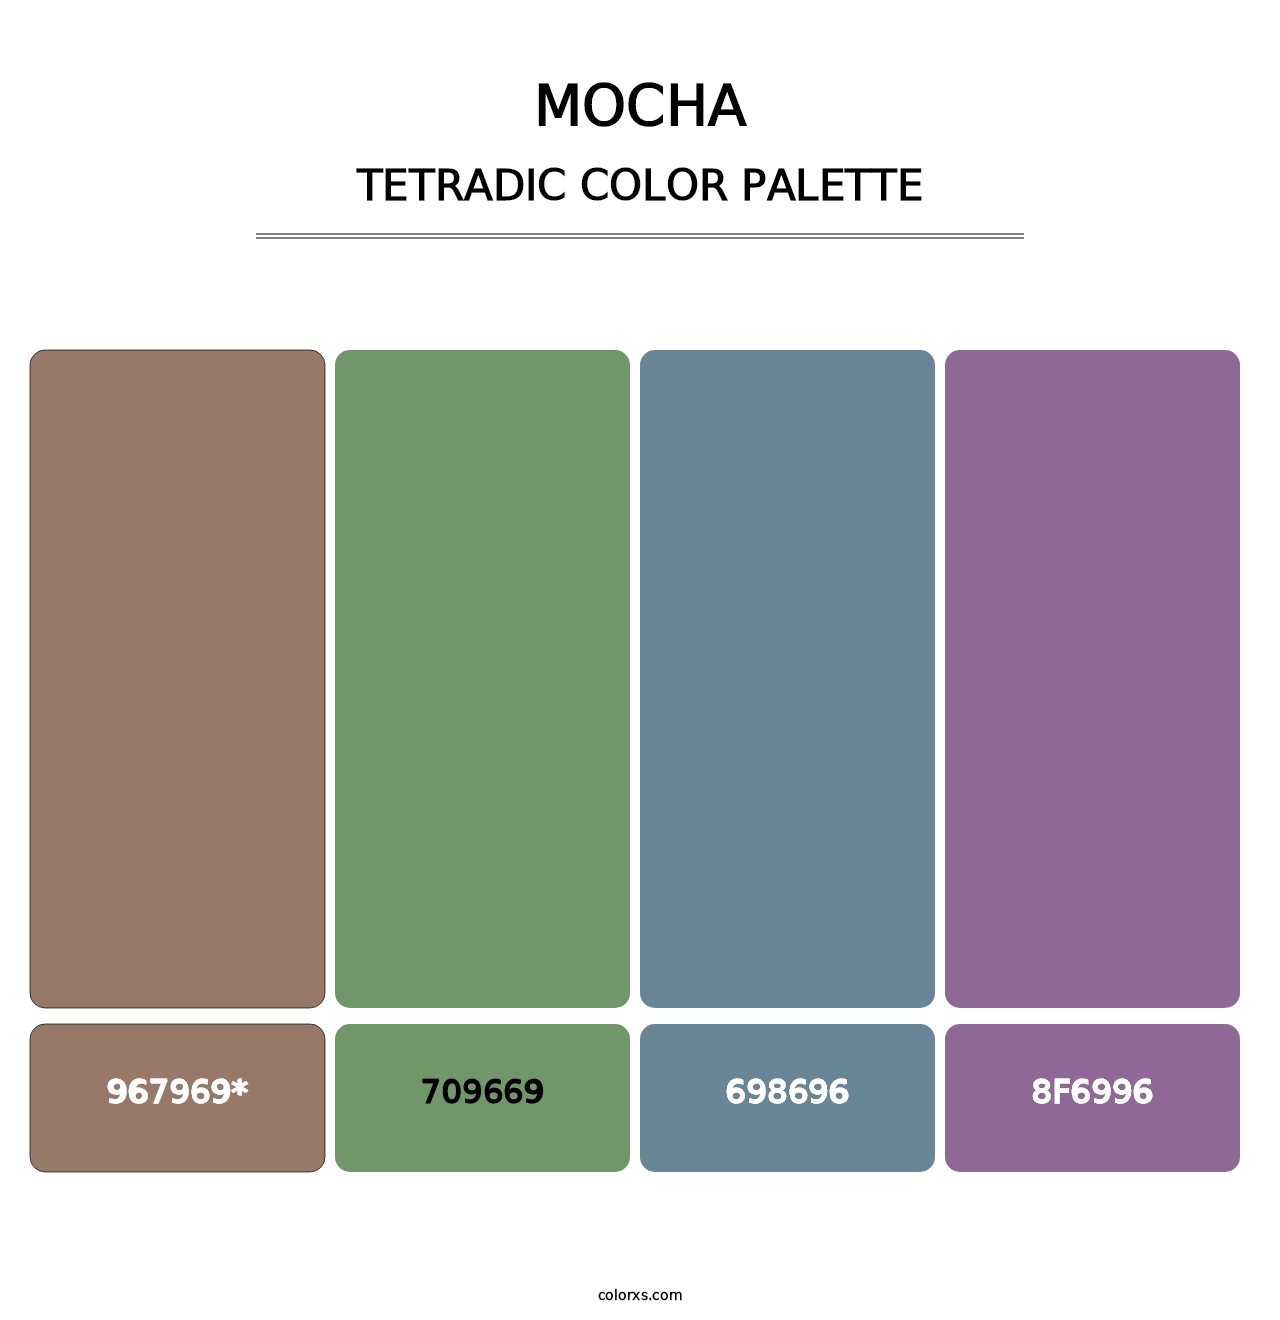 Mocha - Tetradic Color Palette